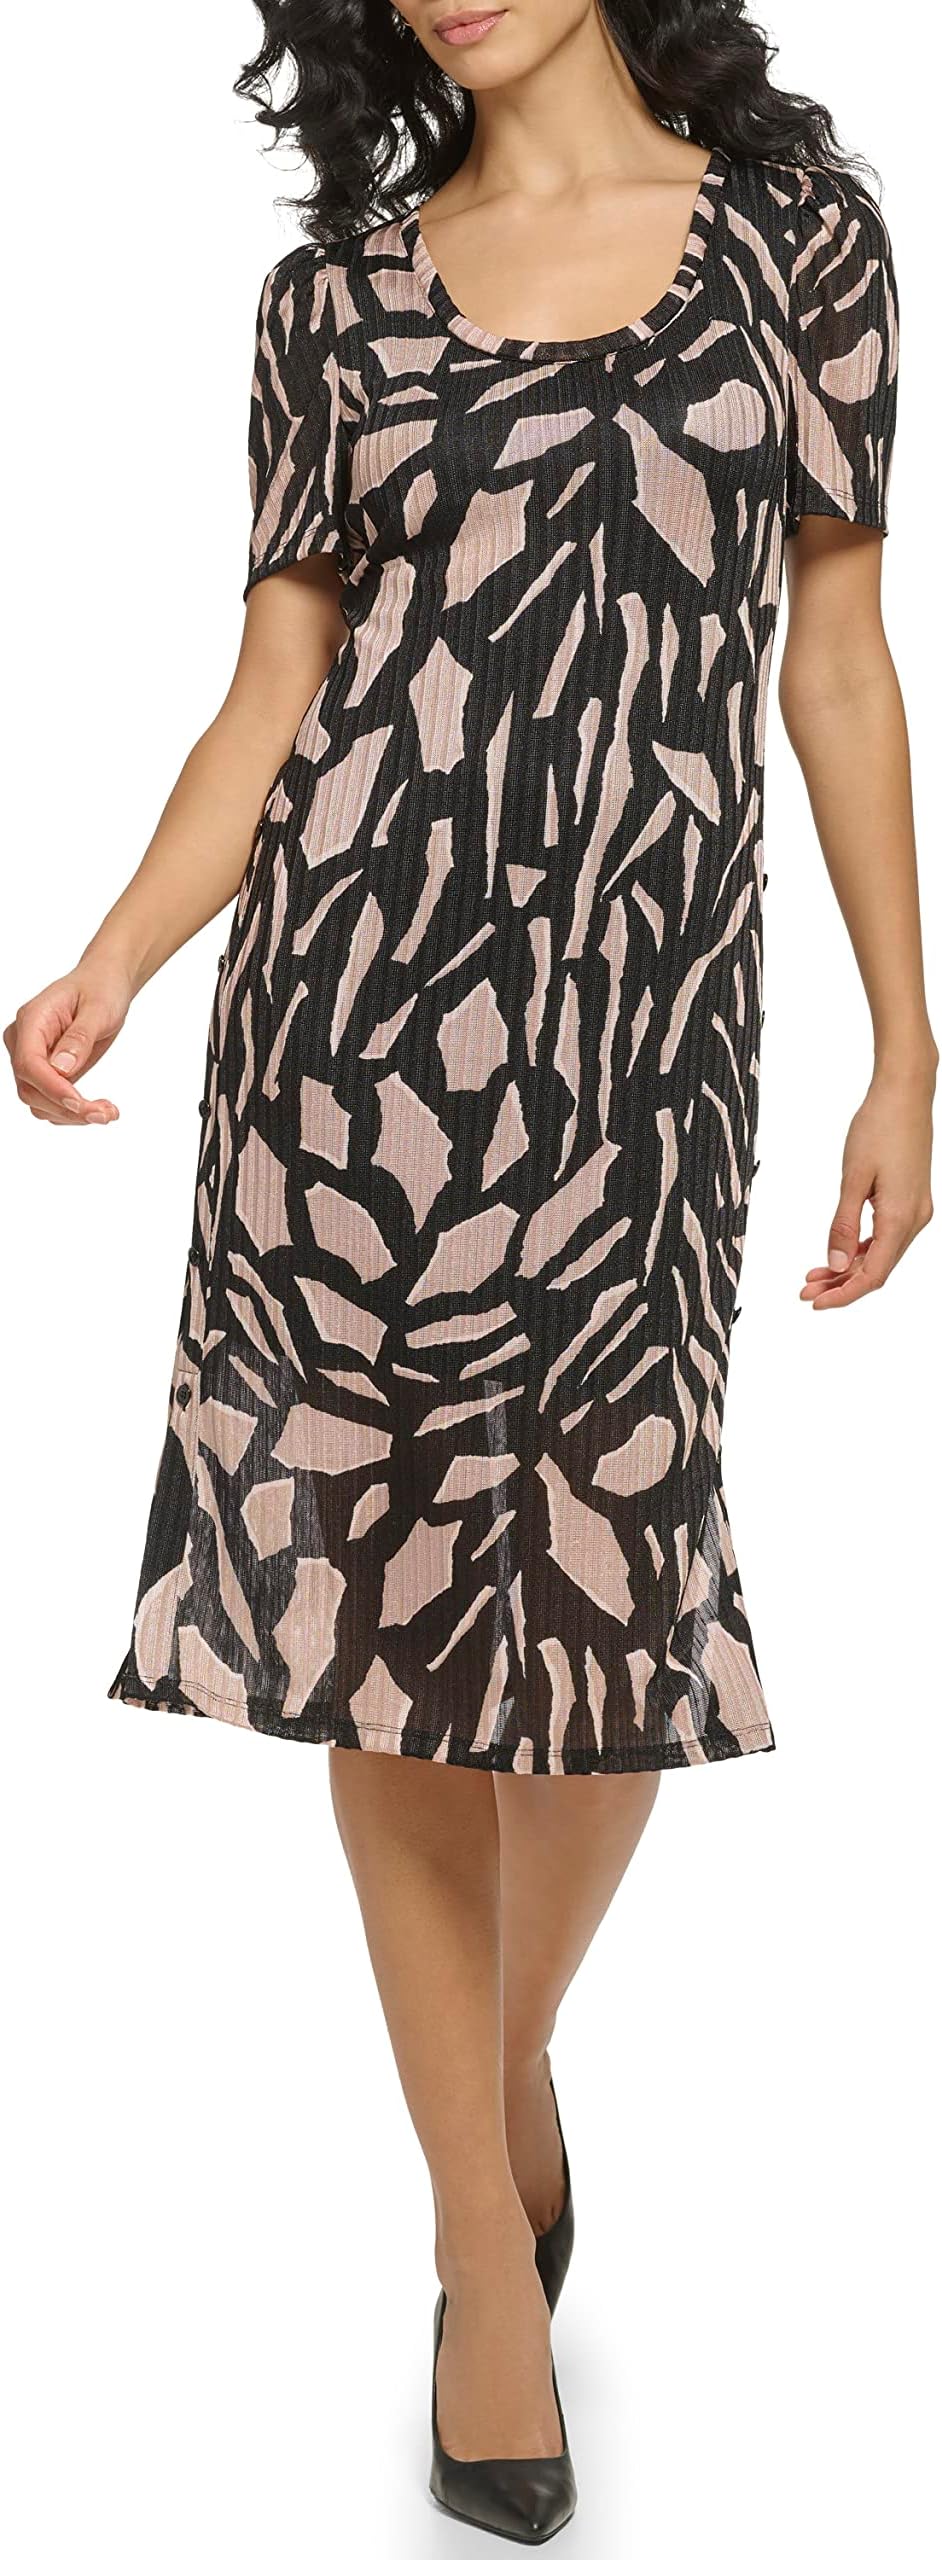 Платье миди Hacci с короткими рукавами и принтом DKNY, цвет Black/Cafe Au Lait Multi